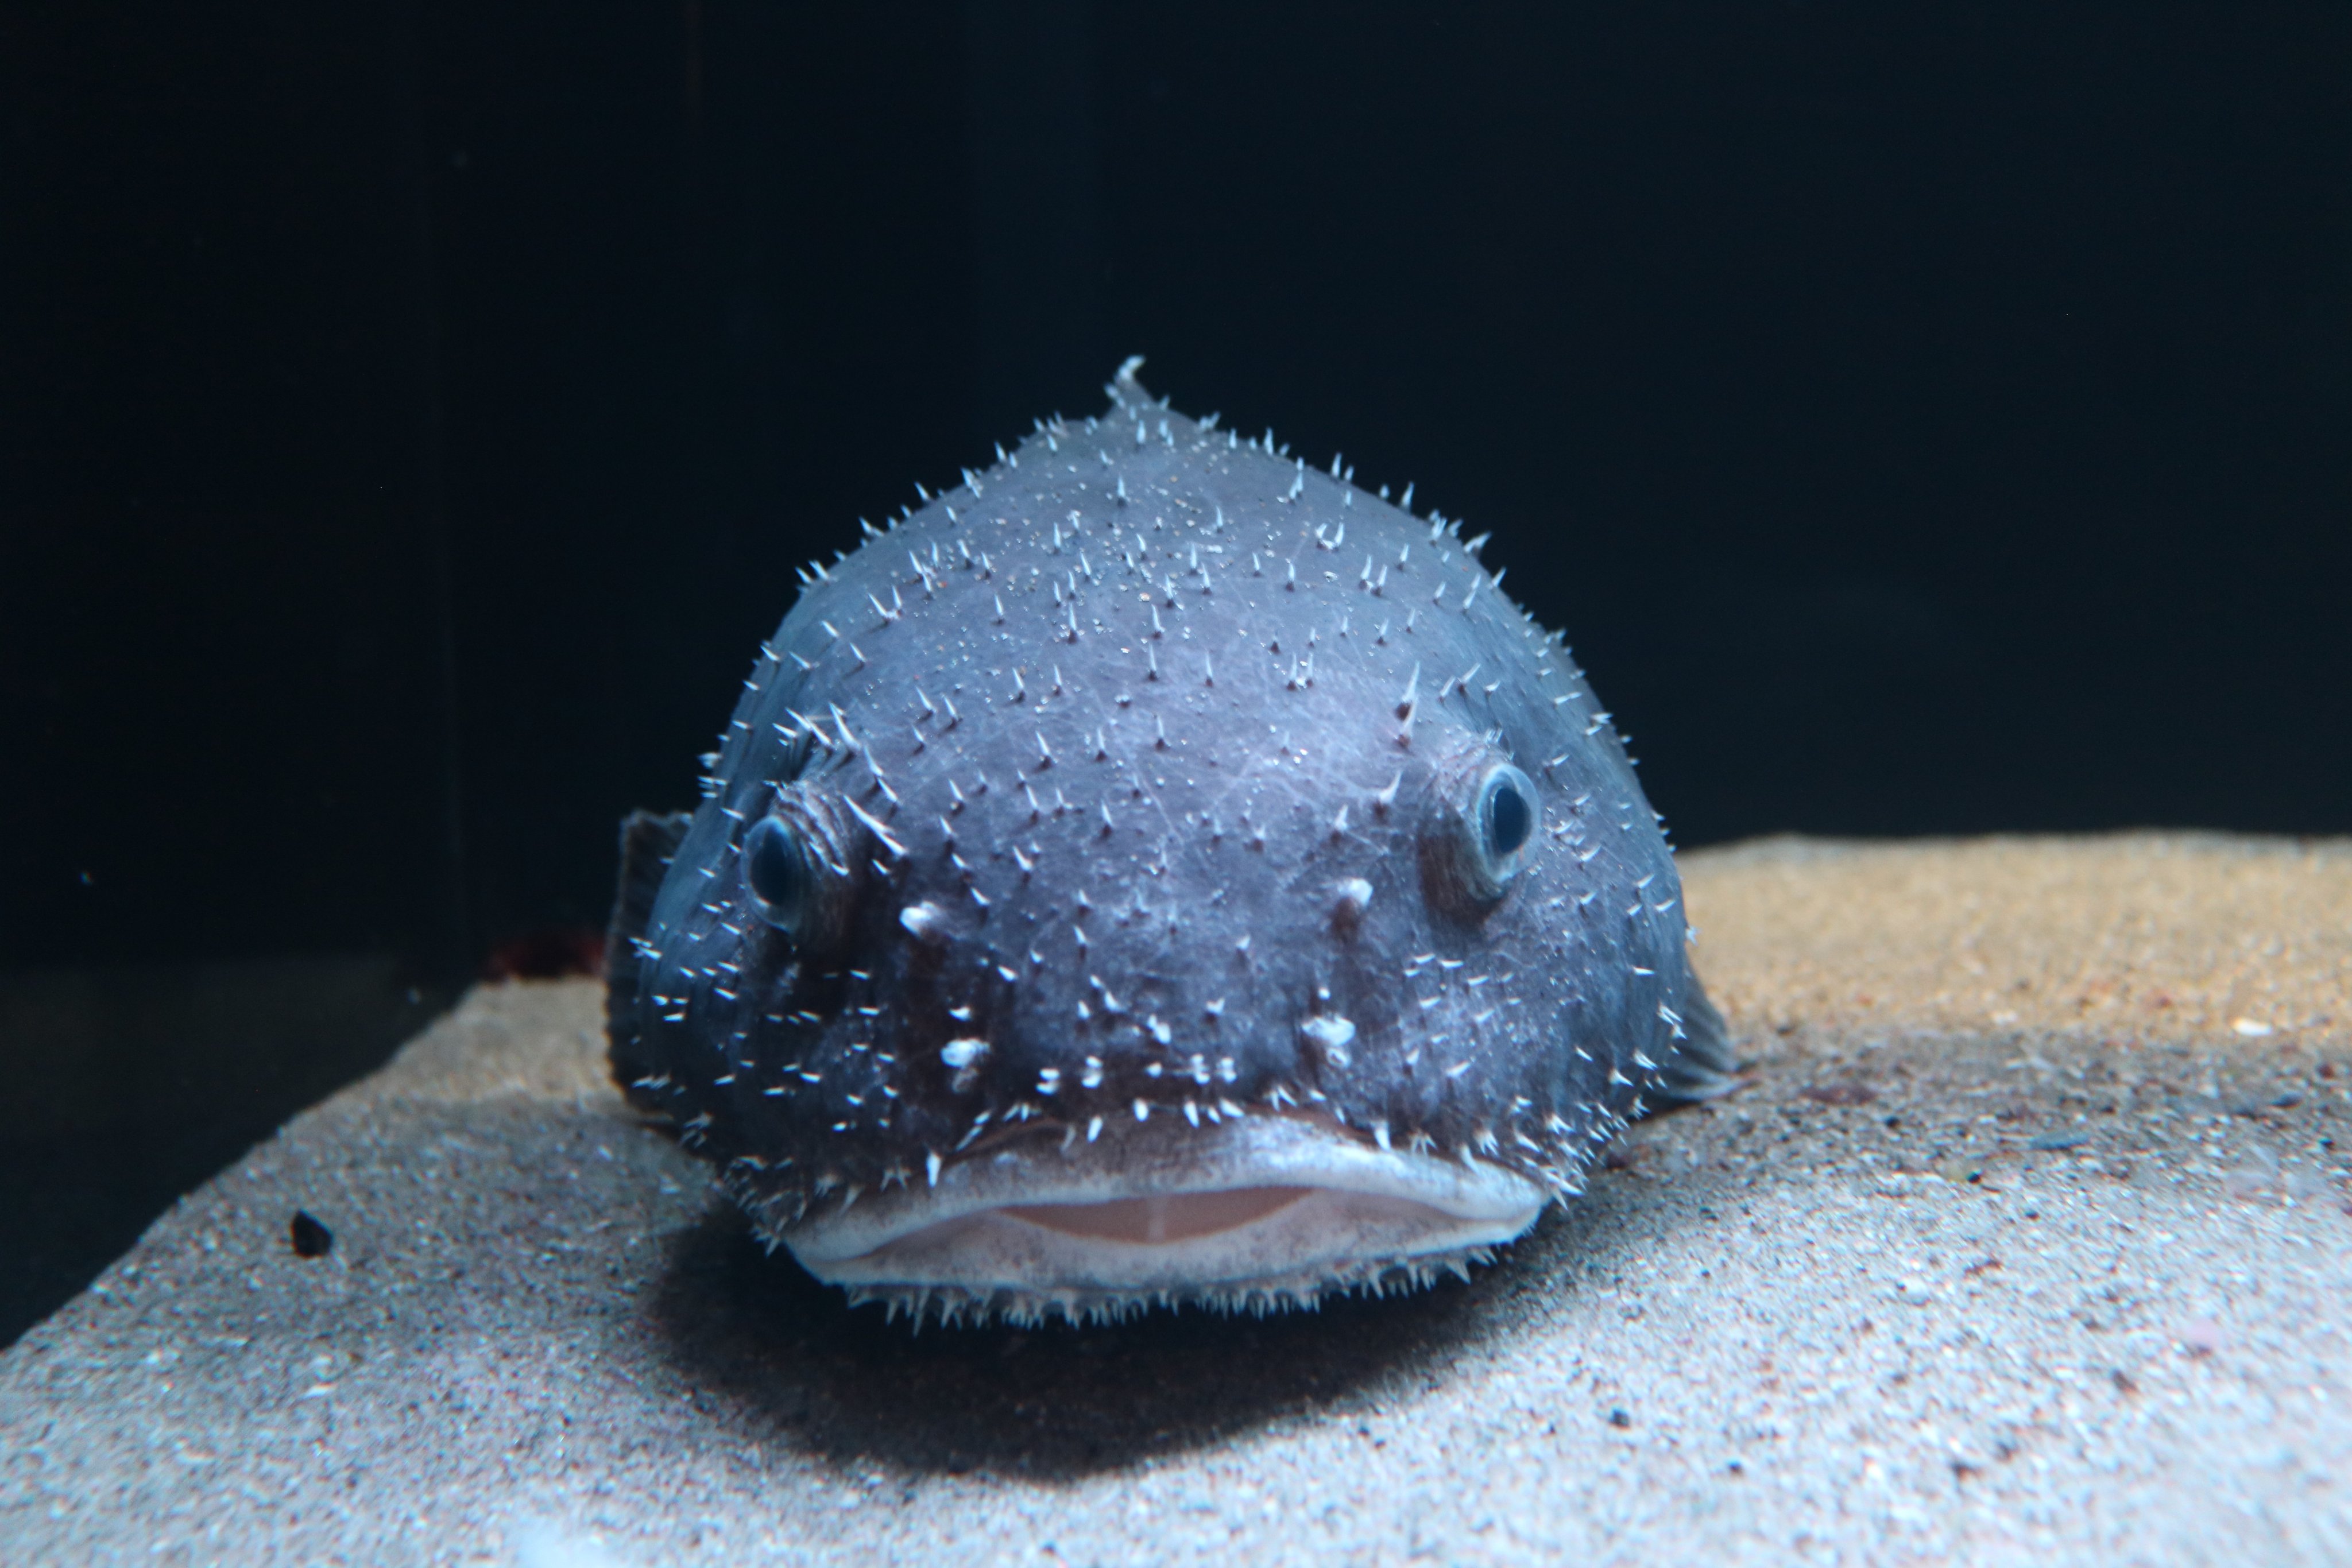 A blobfish underwater